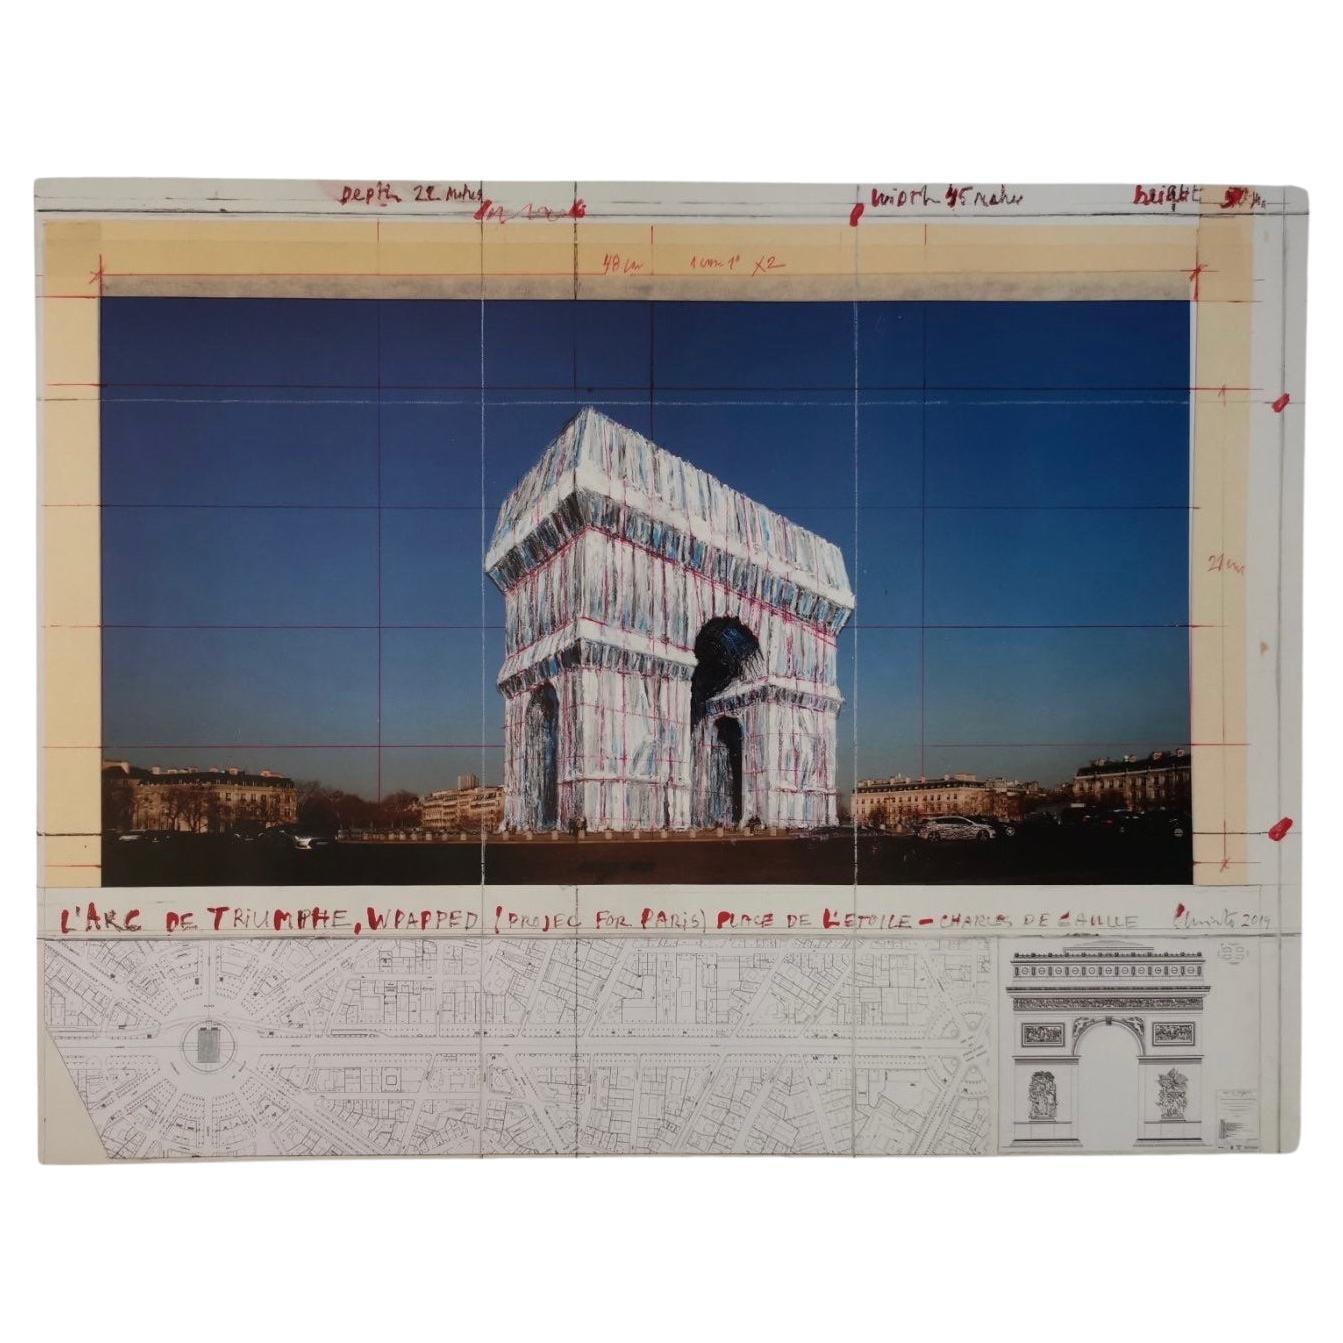 Impression de L'Arc de Triomphe projet emballé signé par l'artiste Christo Javacheff .
Feuille : 62 x 71 cm
ÉTATS-UNIS 2019.